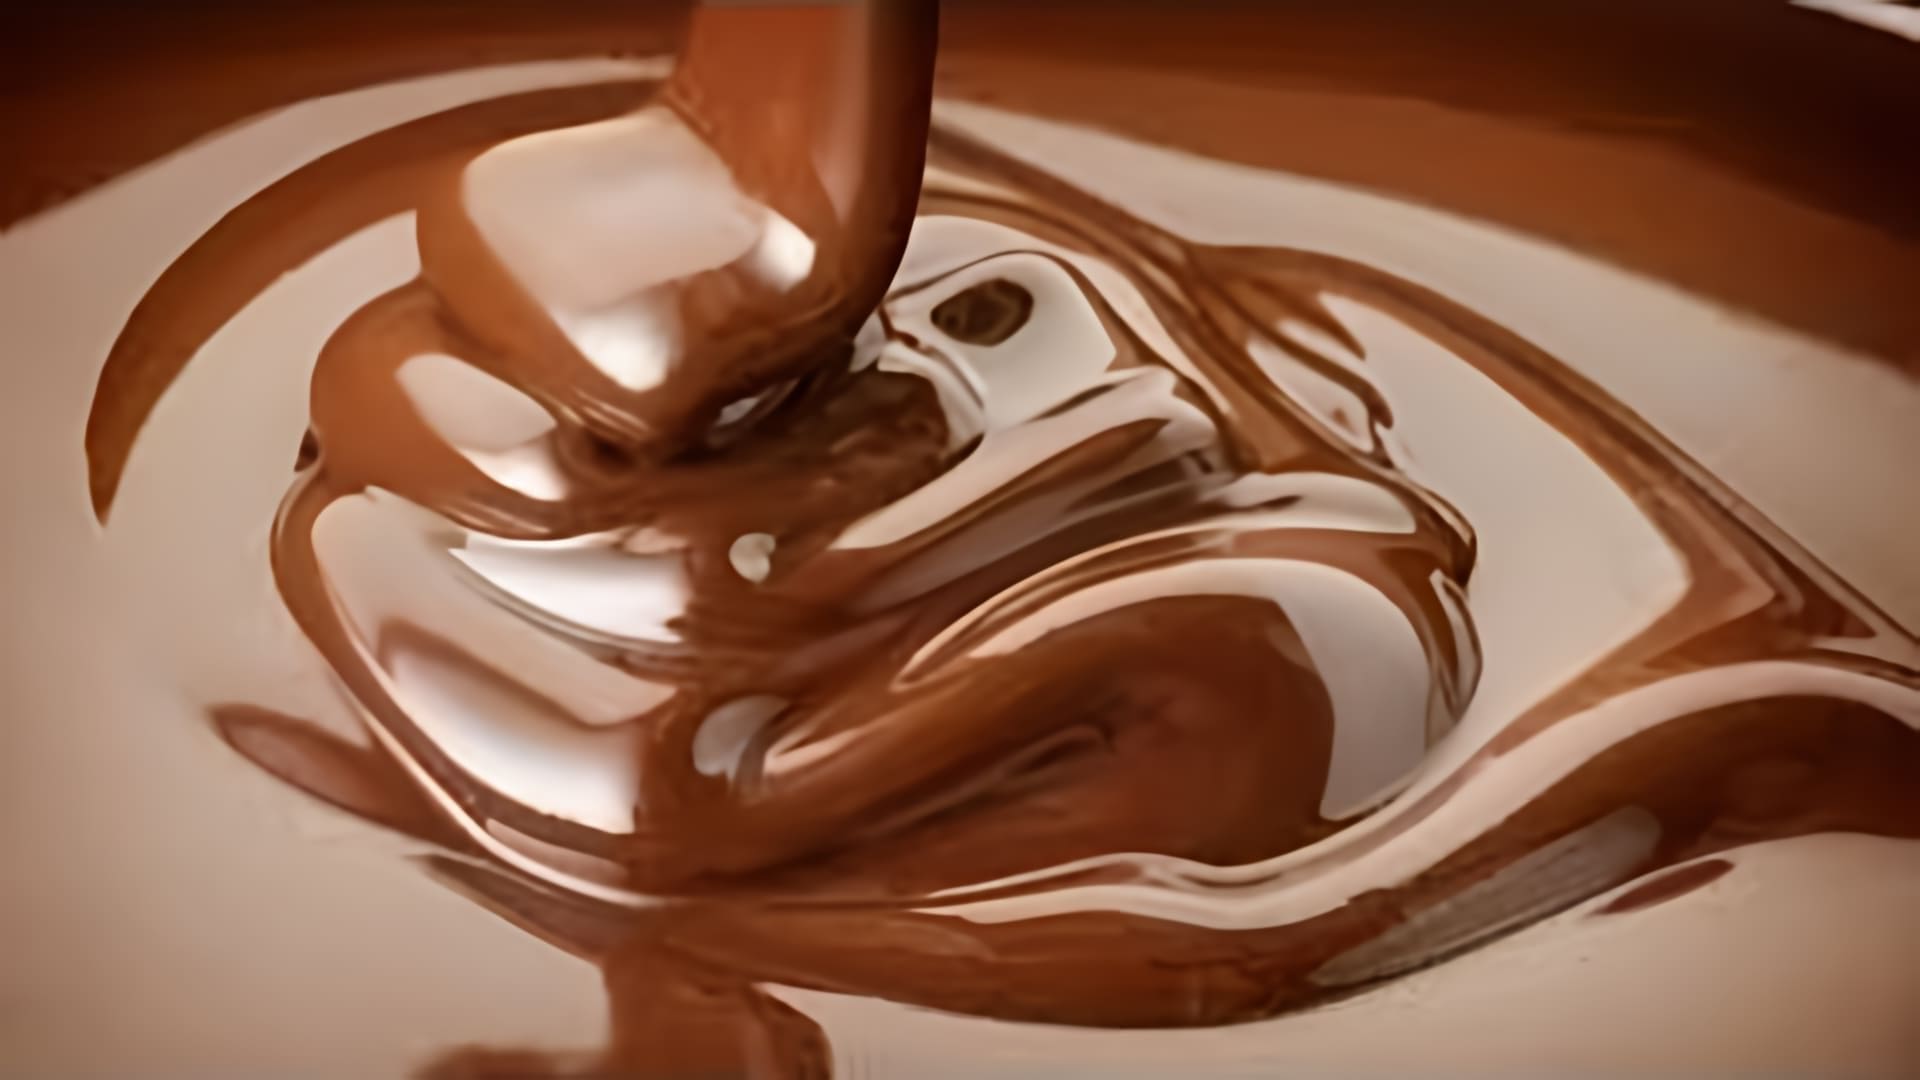 В этом видео показано, как легко и просто растопить шоколад для украшения тортов и пирожных